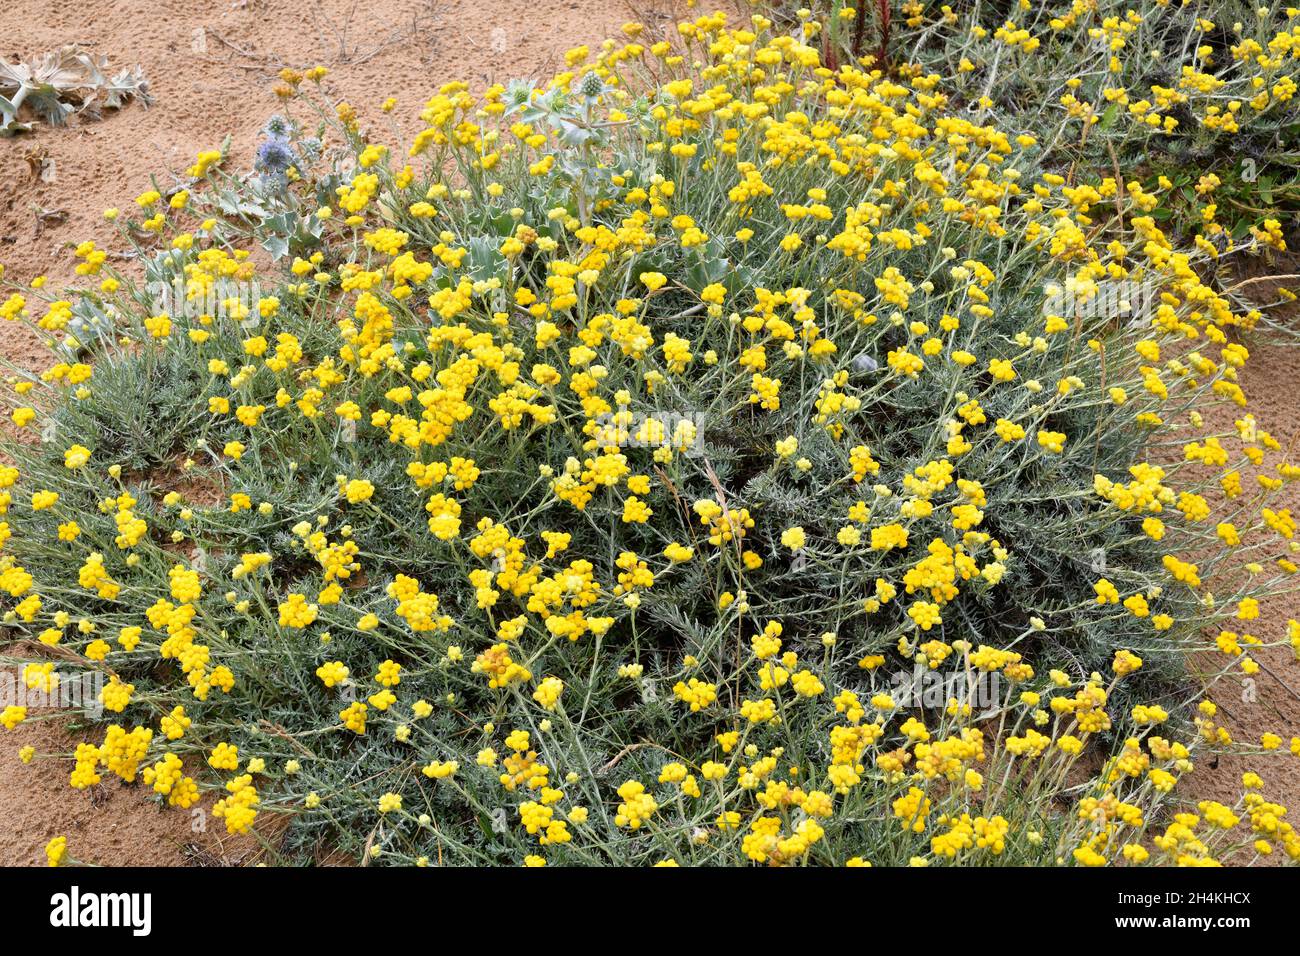 La fragola mediterranea (Helichrysum stoechas) è una pianta annuale o perenne originaria delle coste sabbiose del bacino mediterraneo. Questa foto è stata scattata Foto Stock